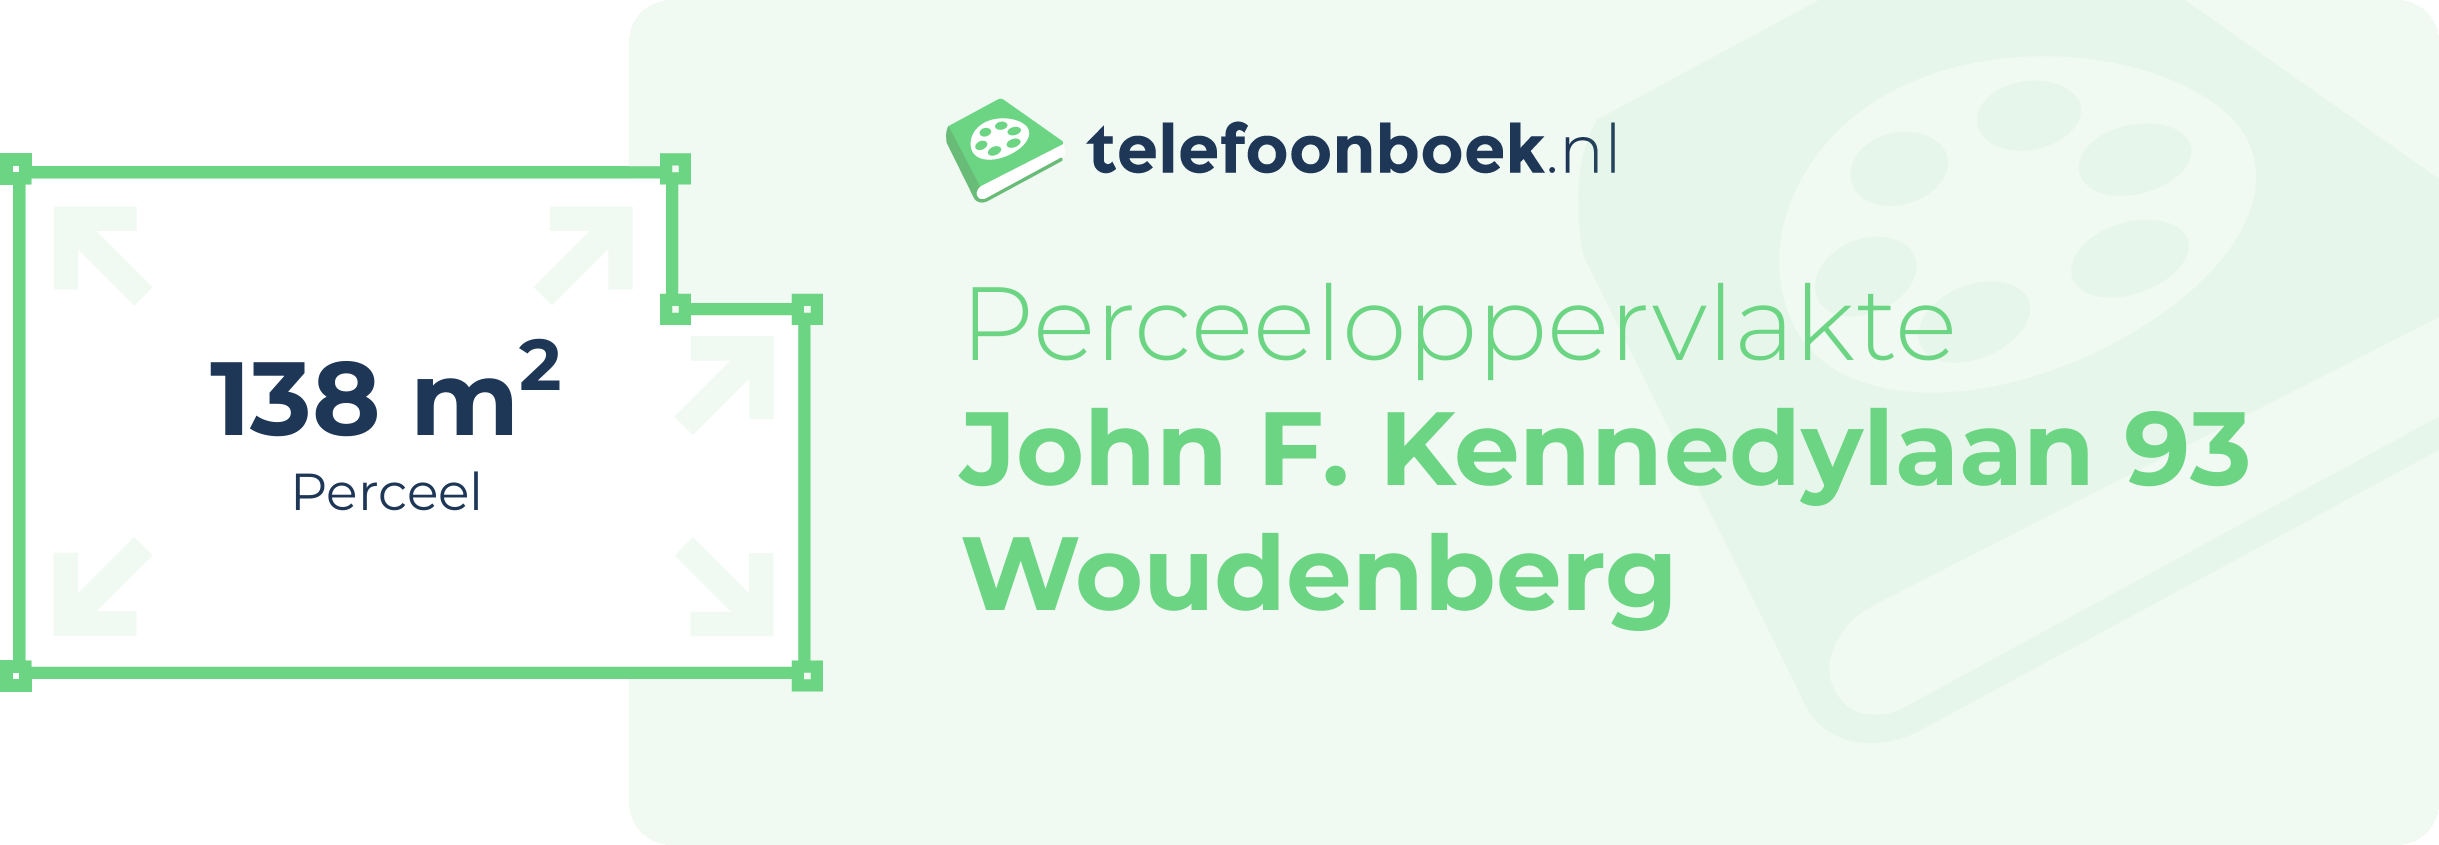 Perceeloppervlakte John F. Kennedylaan 93 Woudenberg